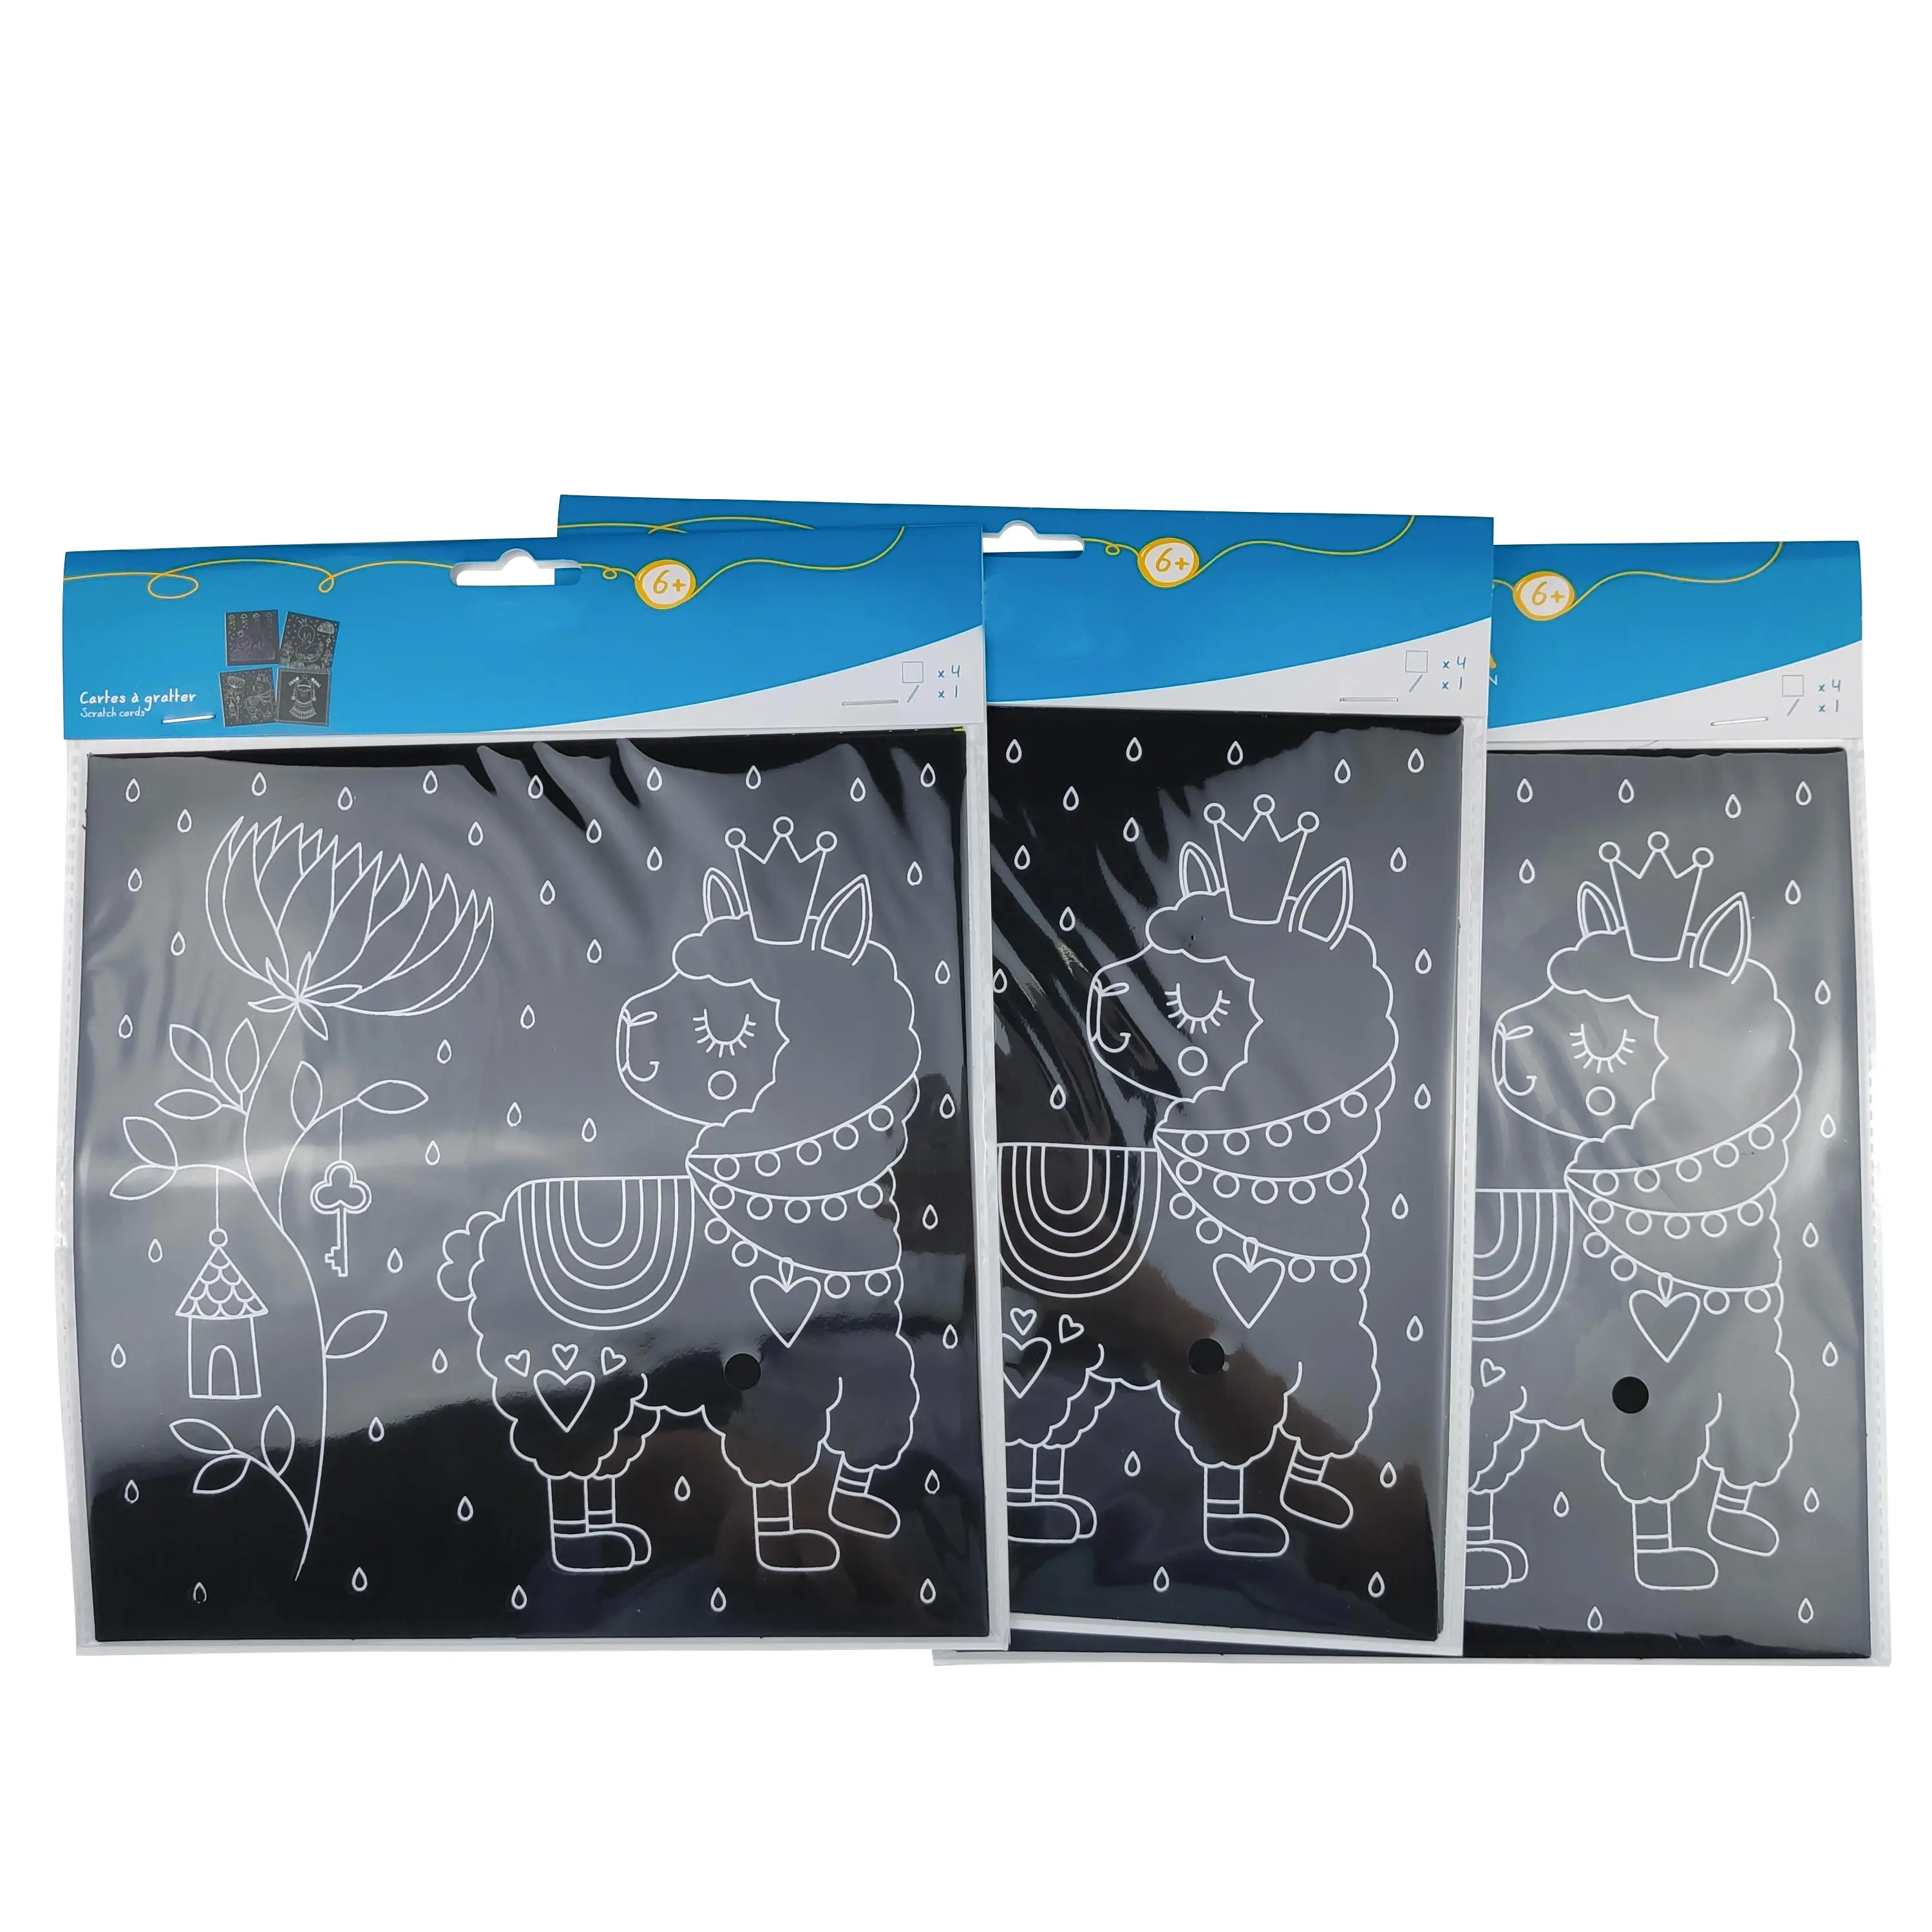 Cartoon Hand Getrokken Diy Magic Scratch Art Papier Voor Kinderen Met Bamboe Stylus